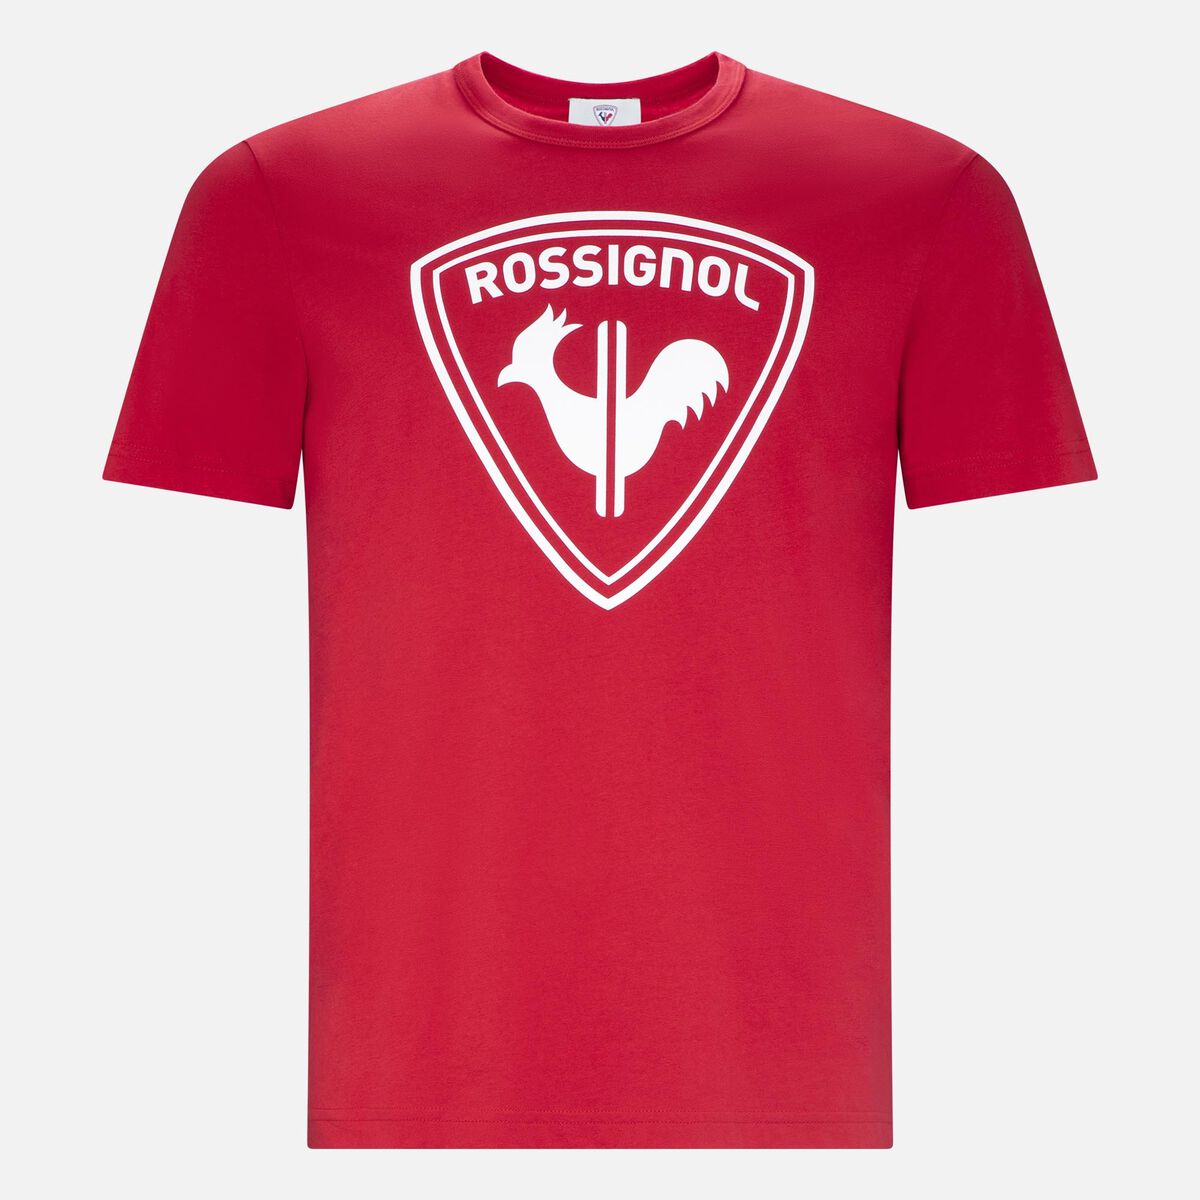 Rossignol Men's logo tee red